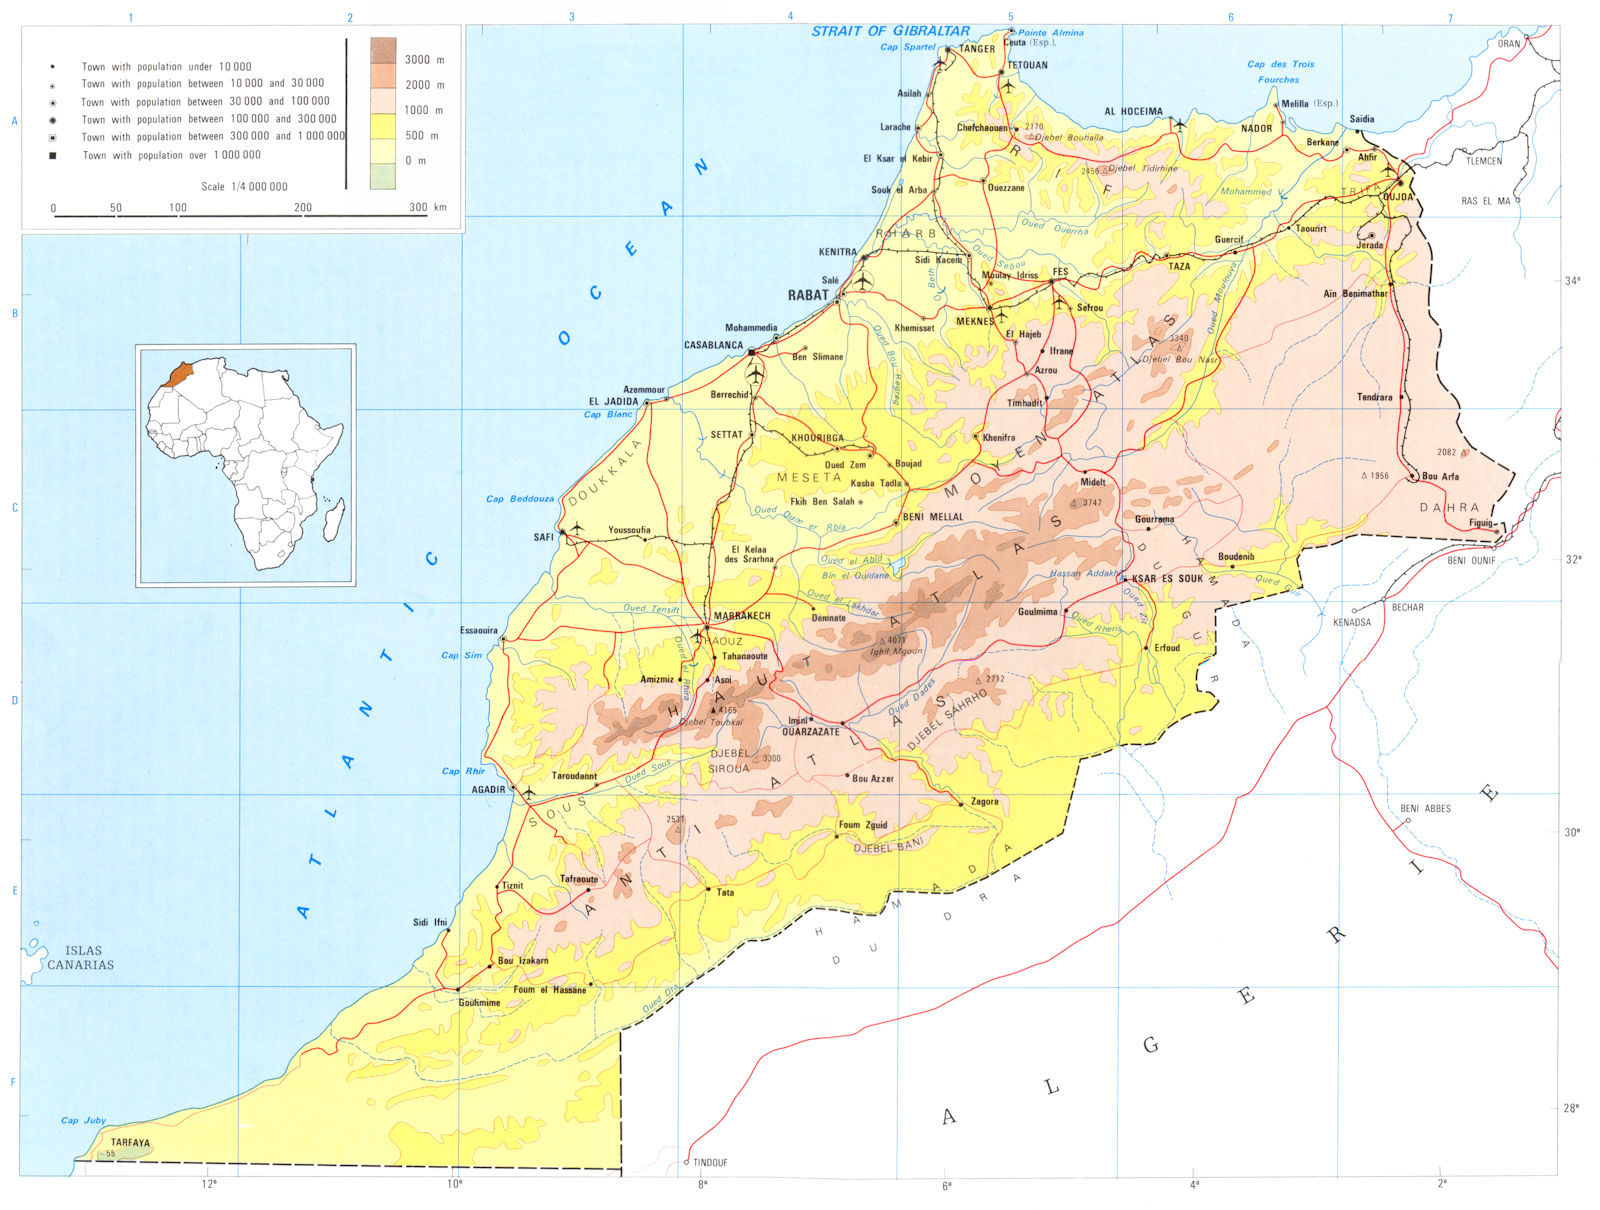 MOROCCO. Morocco; kingdom of Morocco 1973 old vintage map plan chart